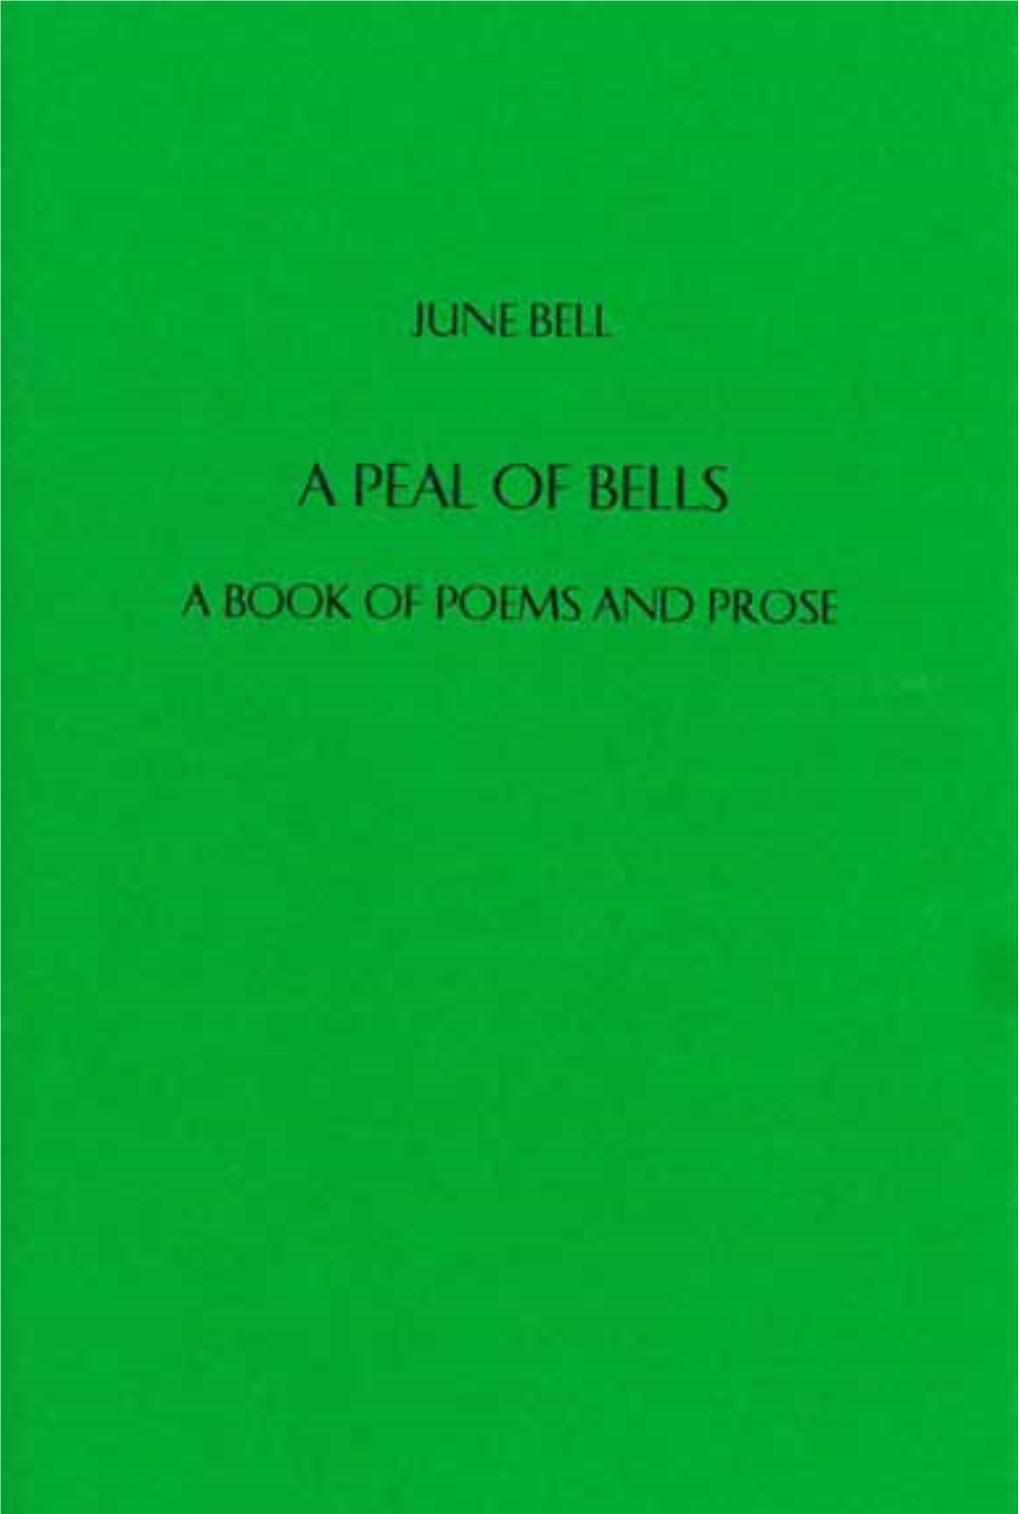 June Bell June Bell